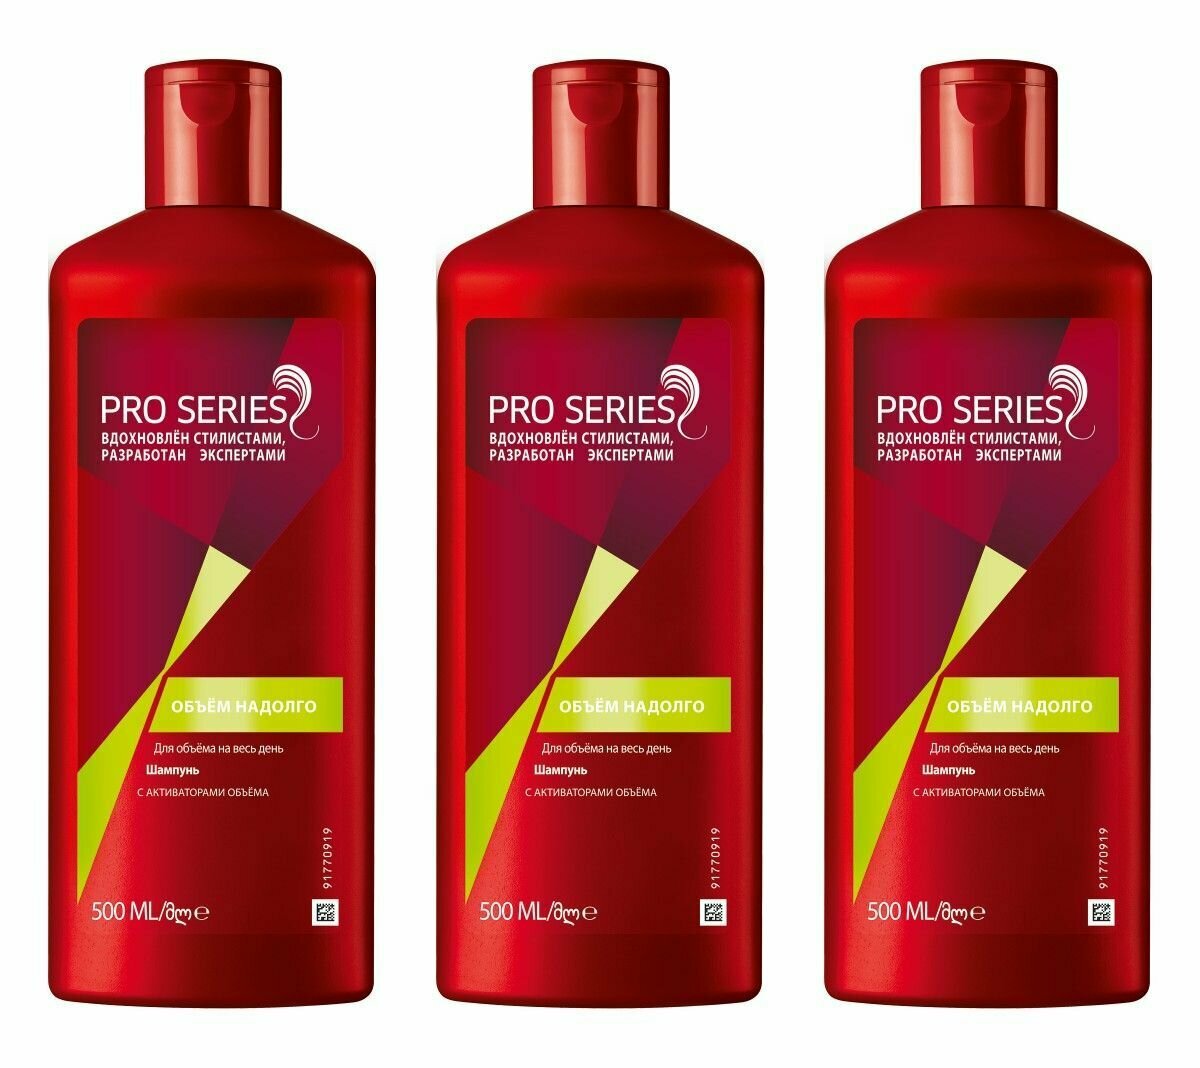 Pro Series Шампунь для волос Объем надолго, 500мл, 3 шт